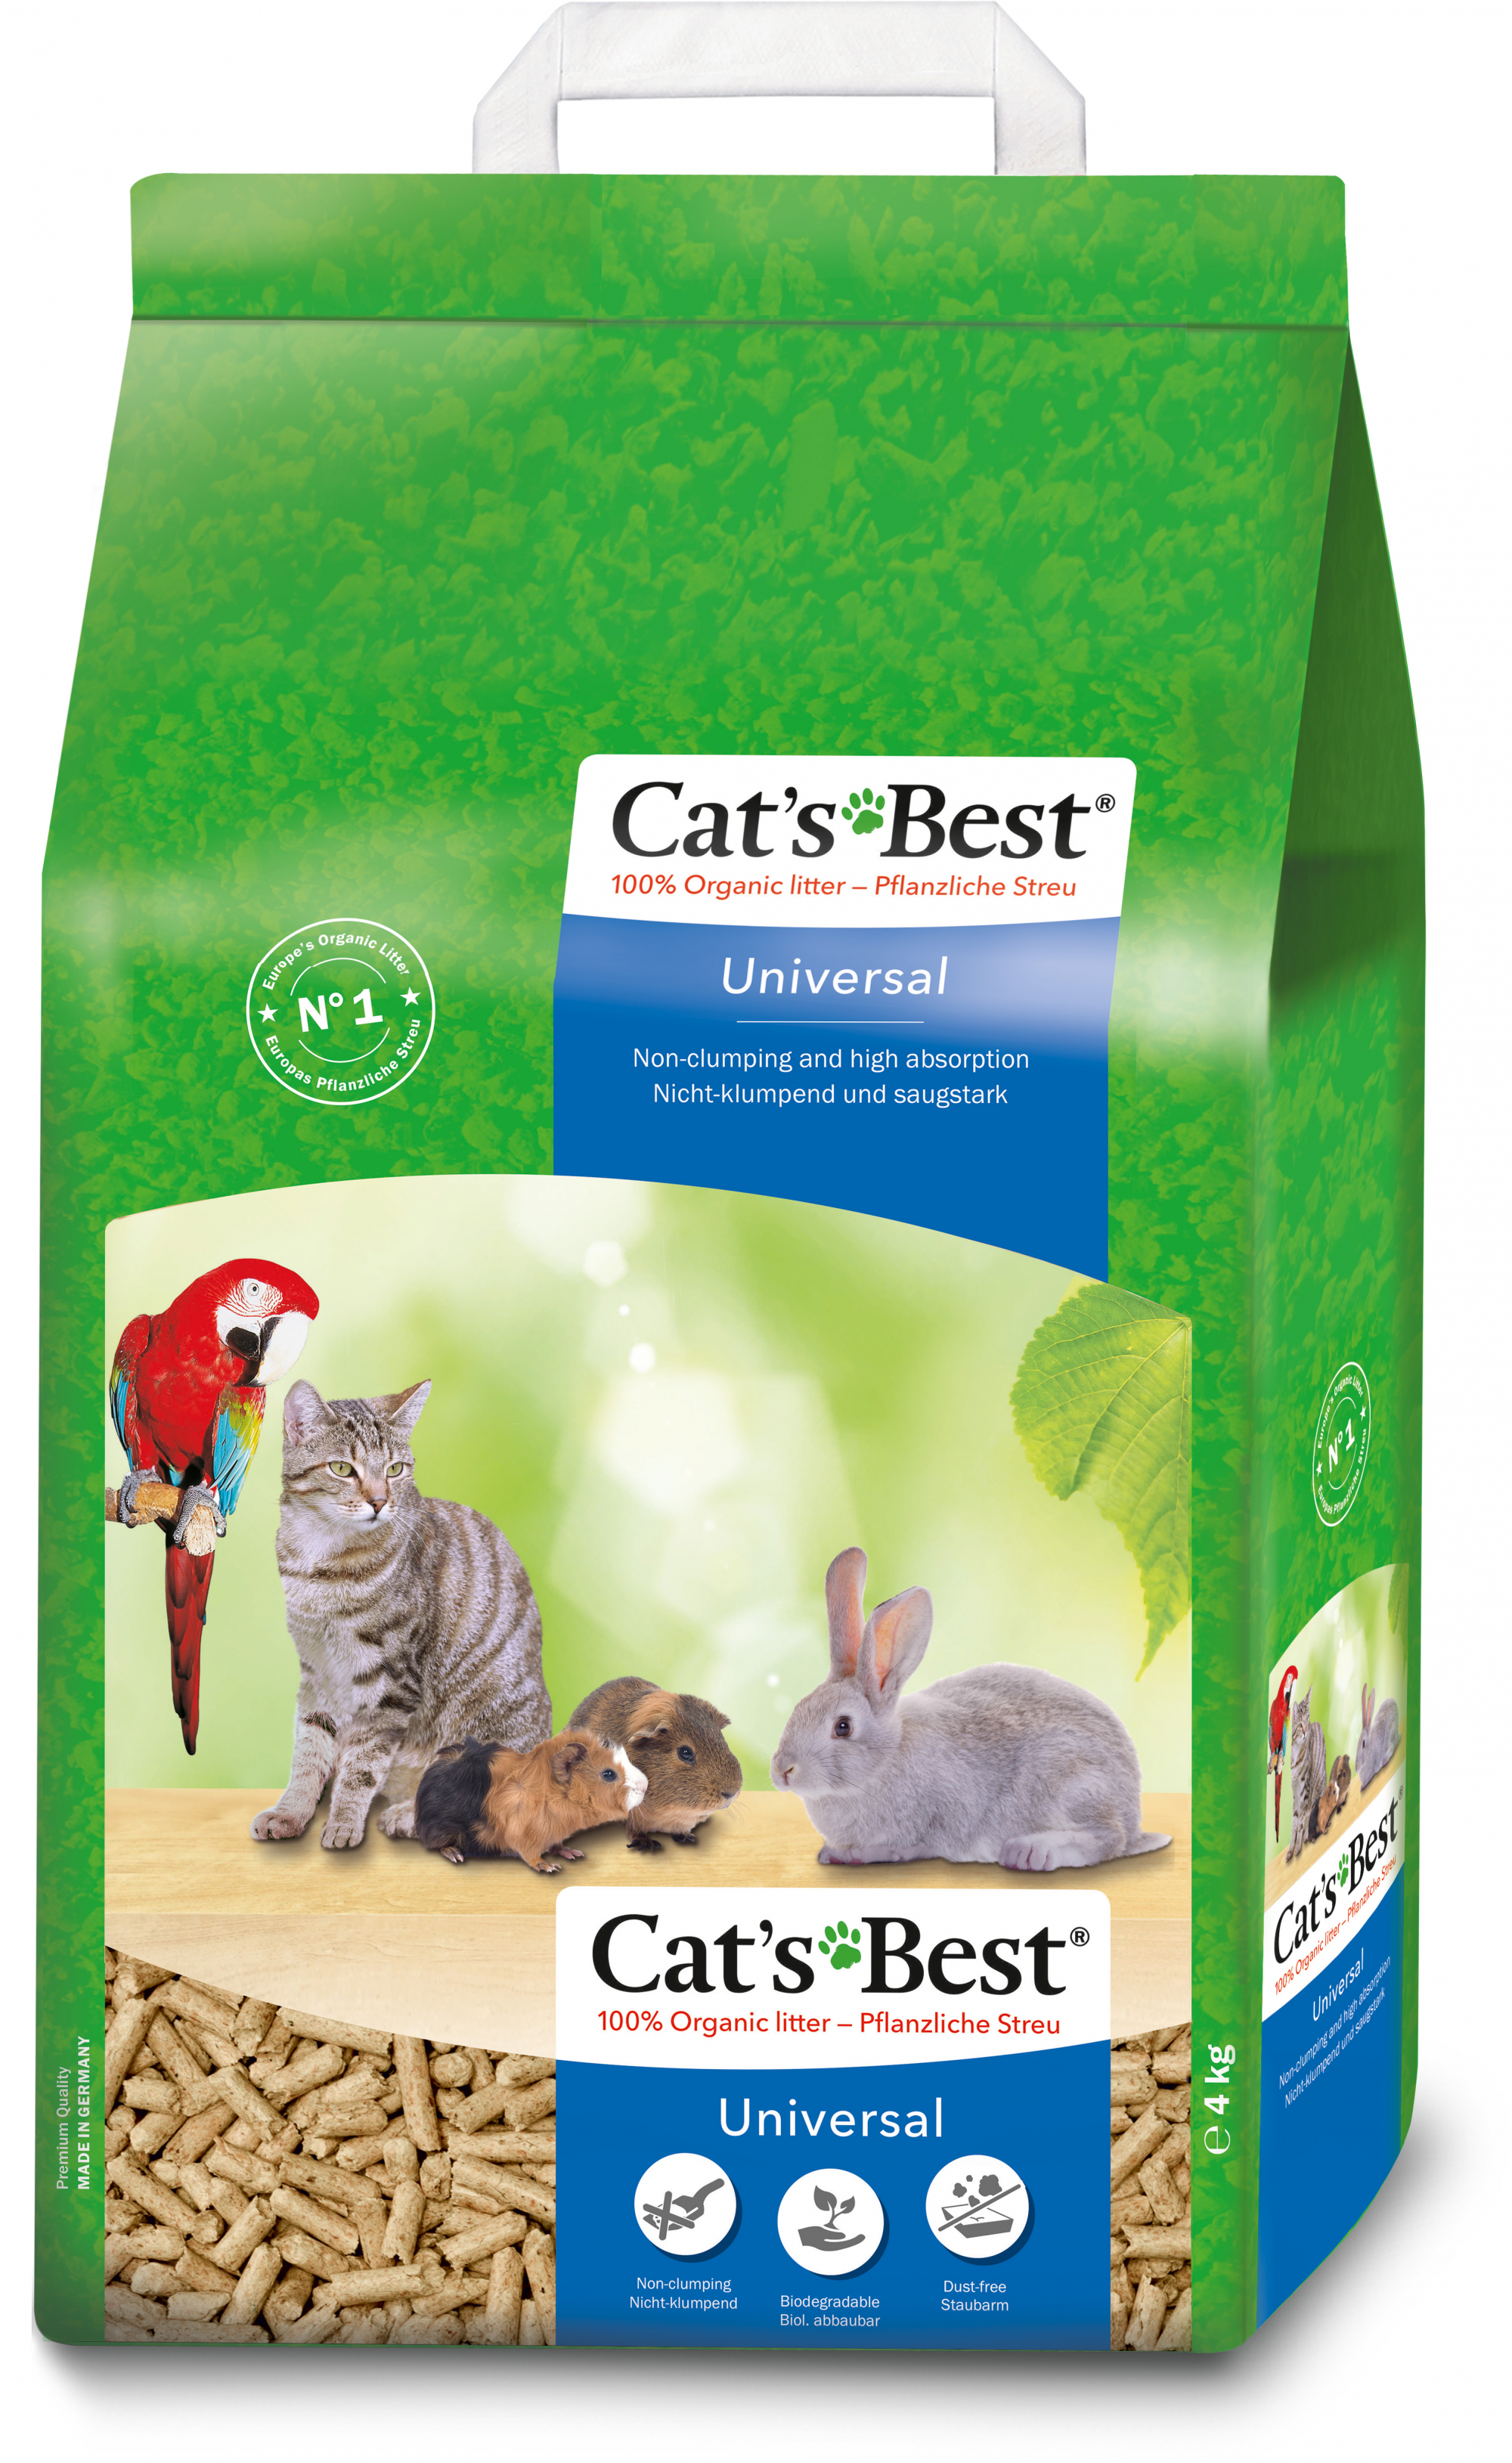 Arena biodegradable en pellets Cat's Best Universal